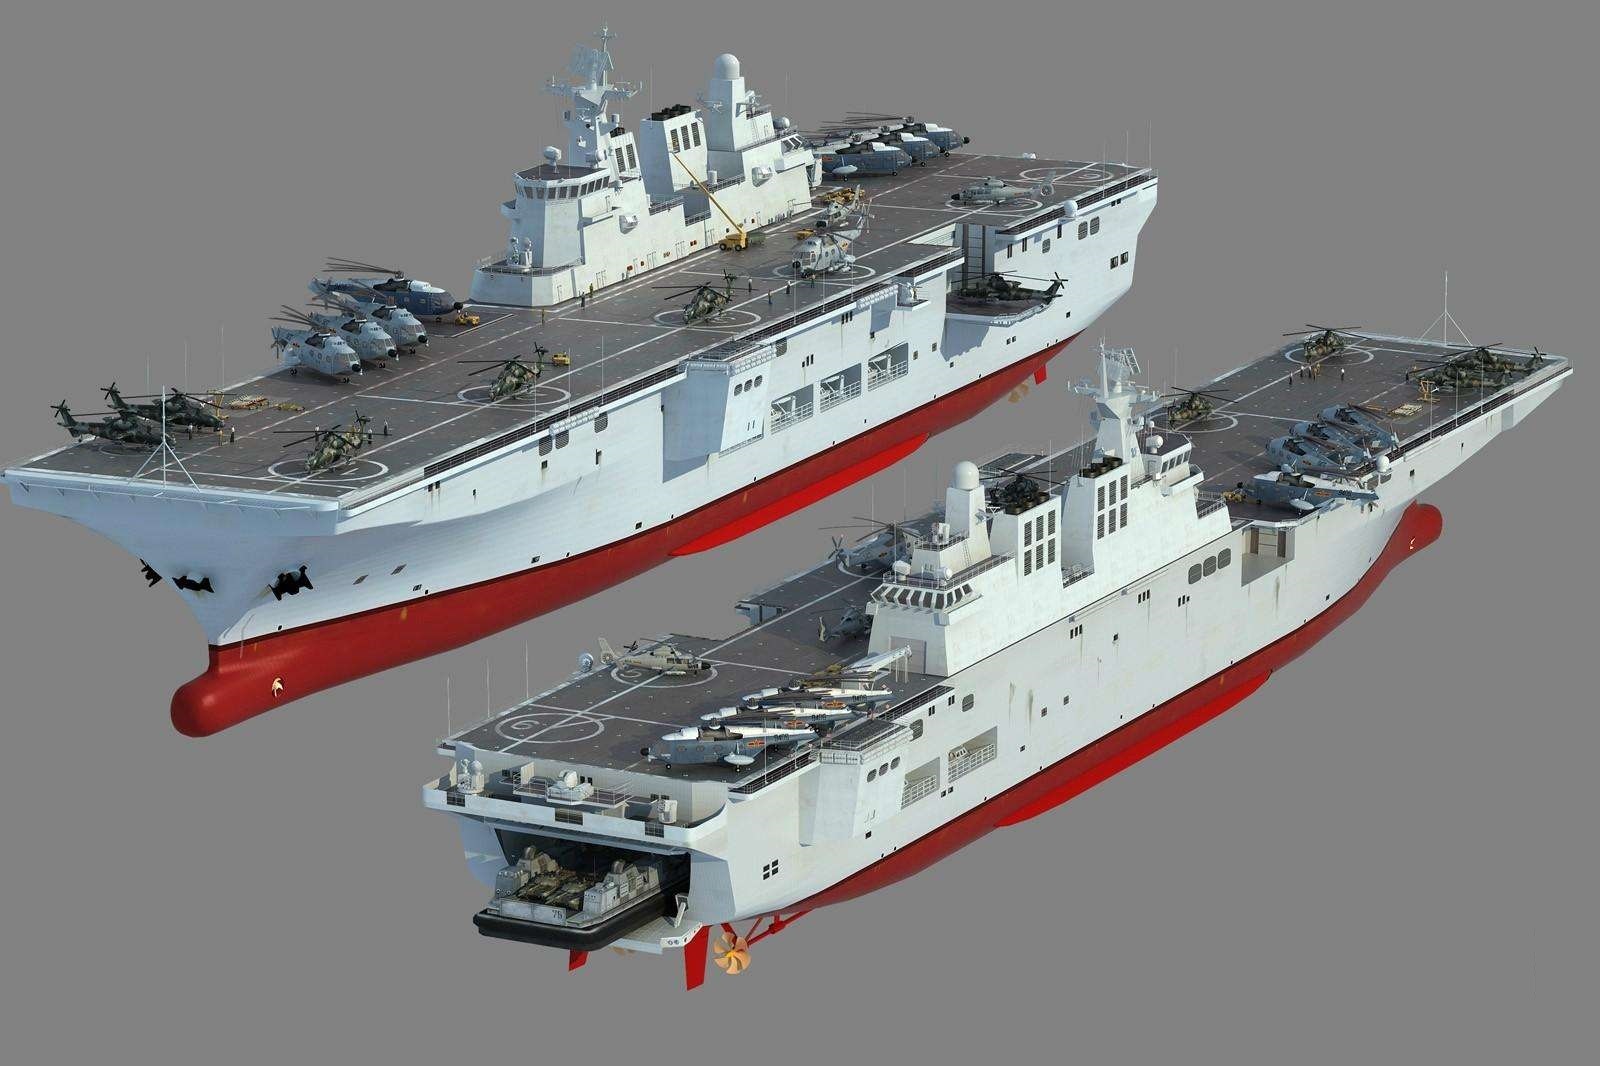 075型两栖攻击舰进展系列三，安装船电和动力，第2艘已动工_手机搜狐网